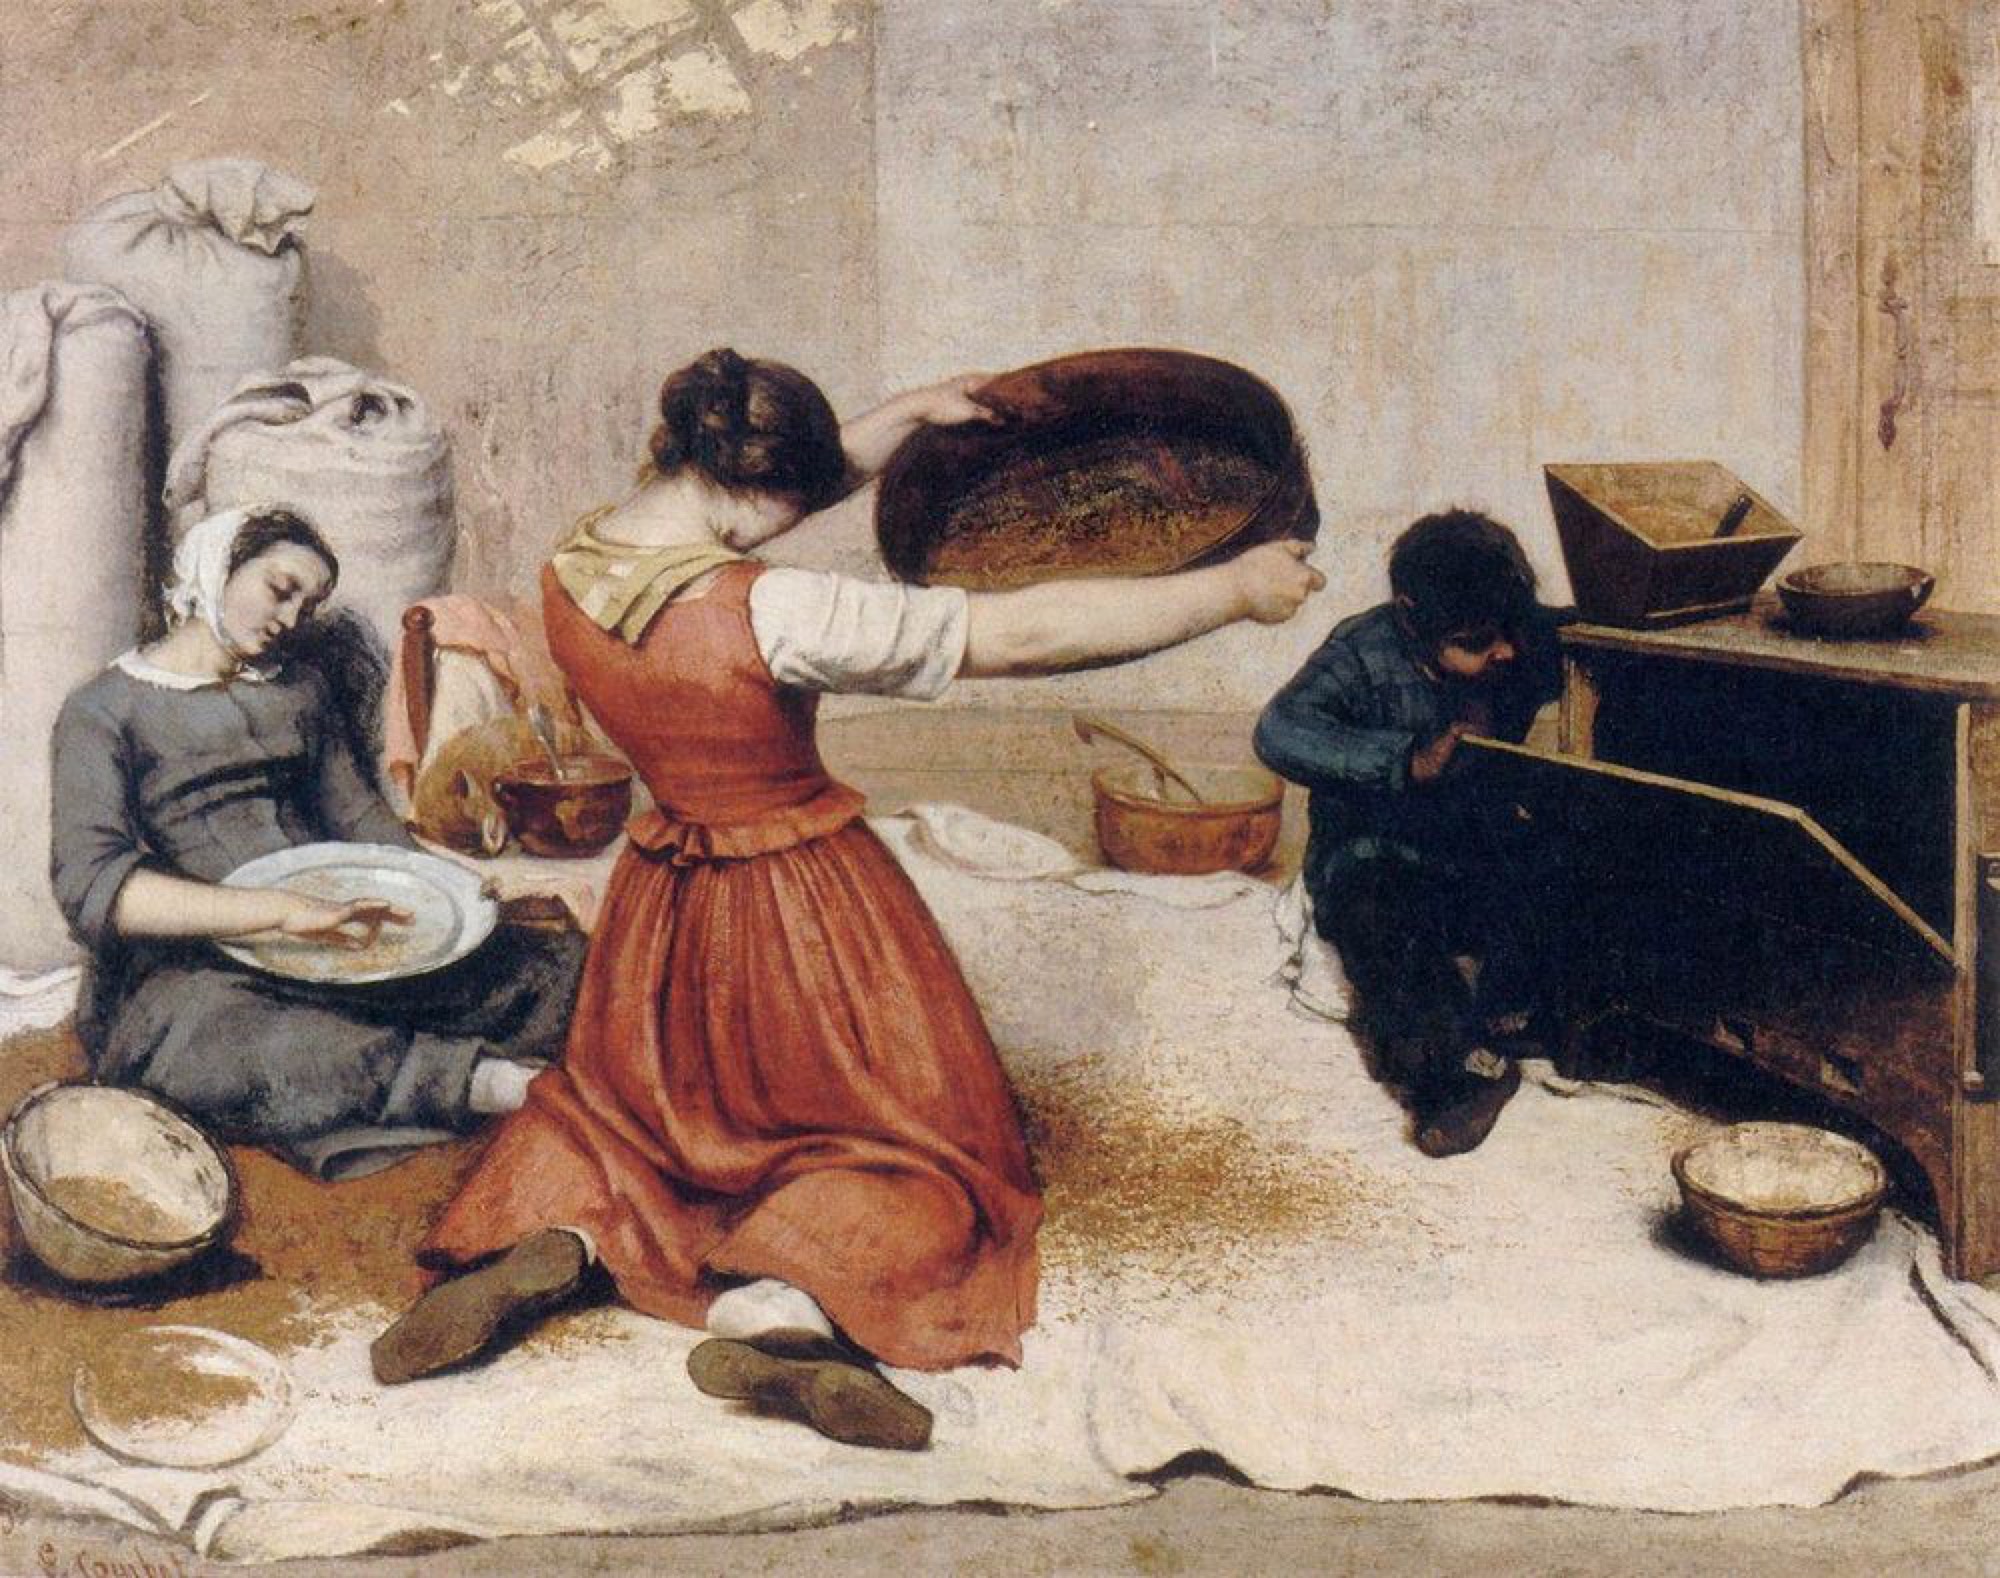 Gustav Courbet, <em>The Wheat Sifters</em> (1854-55), oil on canvas, 131.0 x 167.0 cm, Musée des Beaux-Artes de Nantes.